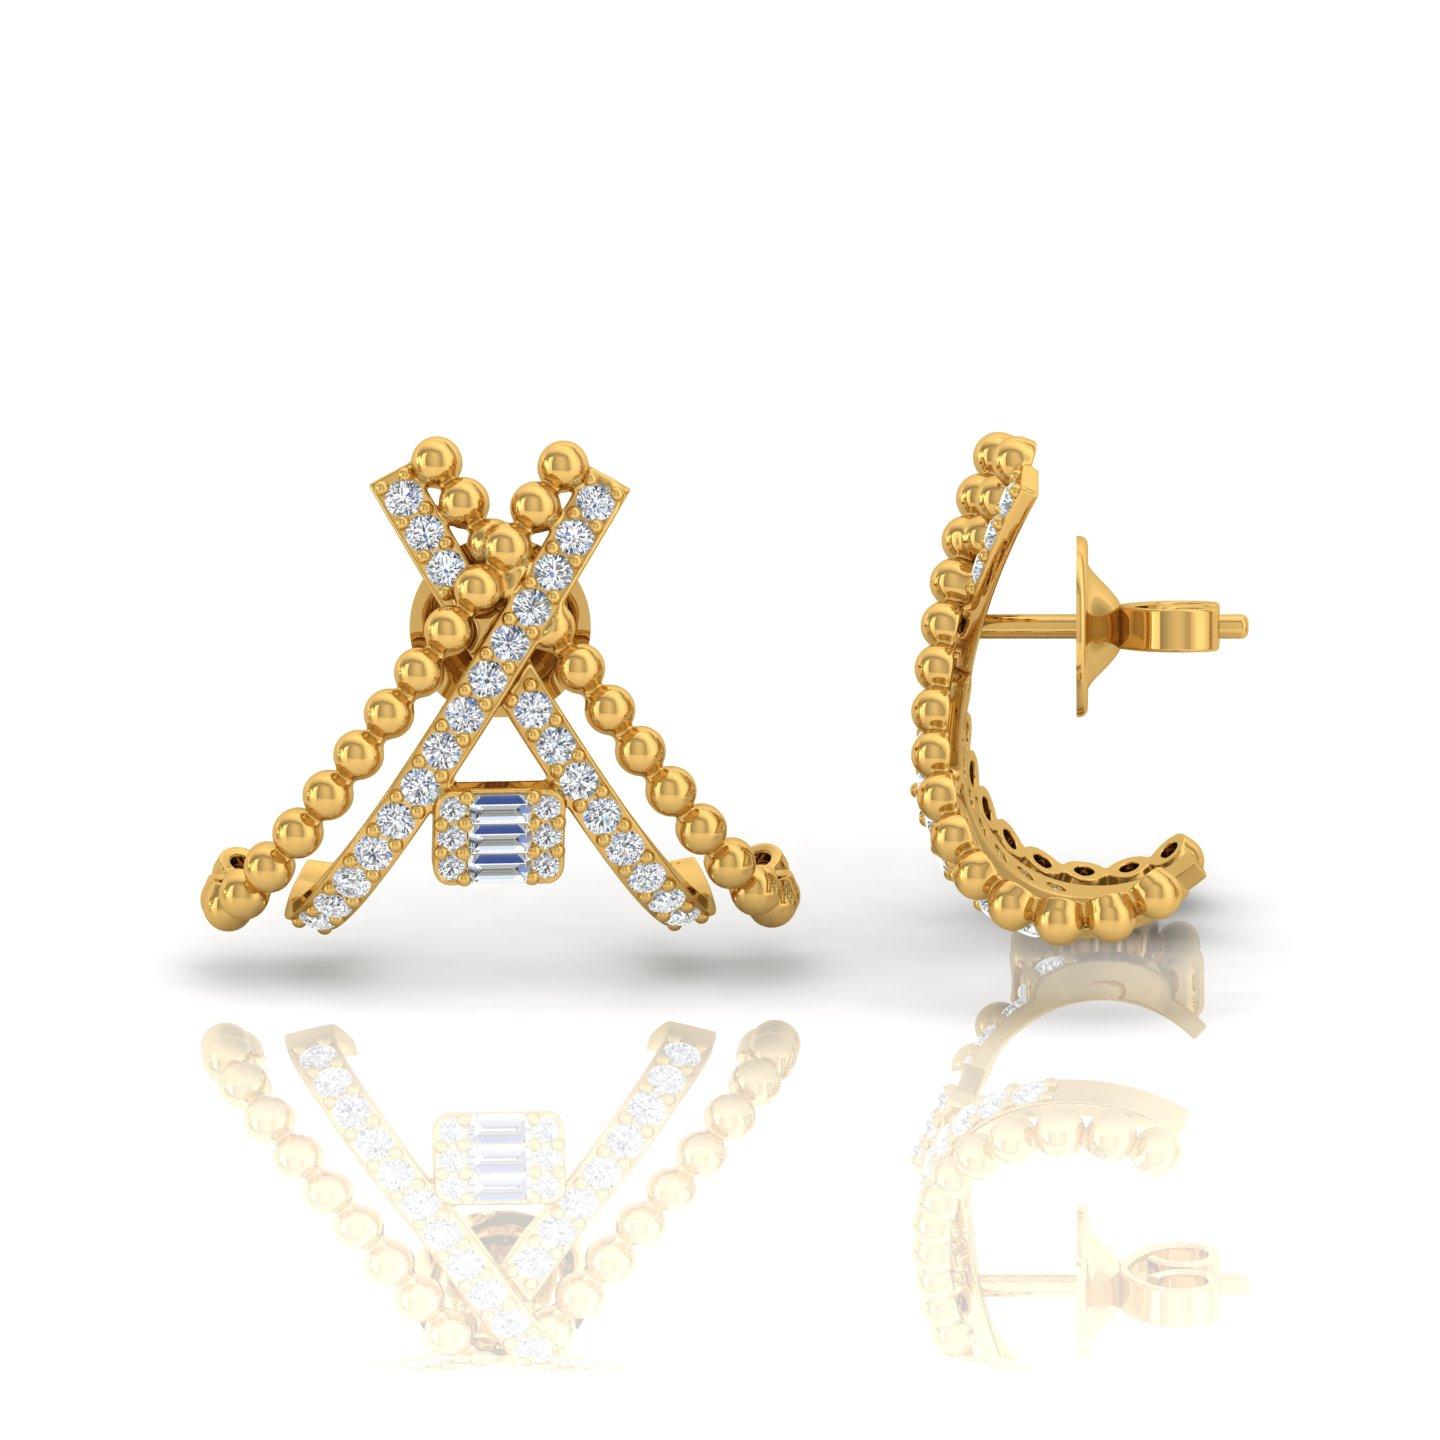 Artikel-Code :-  q
Bruttogewicht :- 6.98 gm
18k Solid Gelbgold Wt. :- 6,79 gm
Natürlicher Diamant Gewicht :- 0.96 Ct. ( DURCHSCHNITTLICHE DIAMANT-REINHEIT SI1-SI2 & FARBE H-I )
Ohrringe Größe :- ca. 20 x 24 mm.

✦